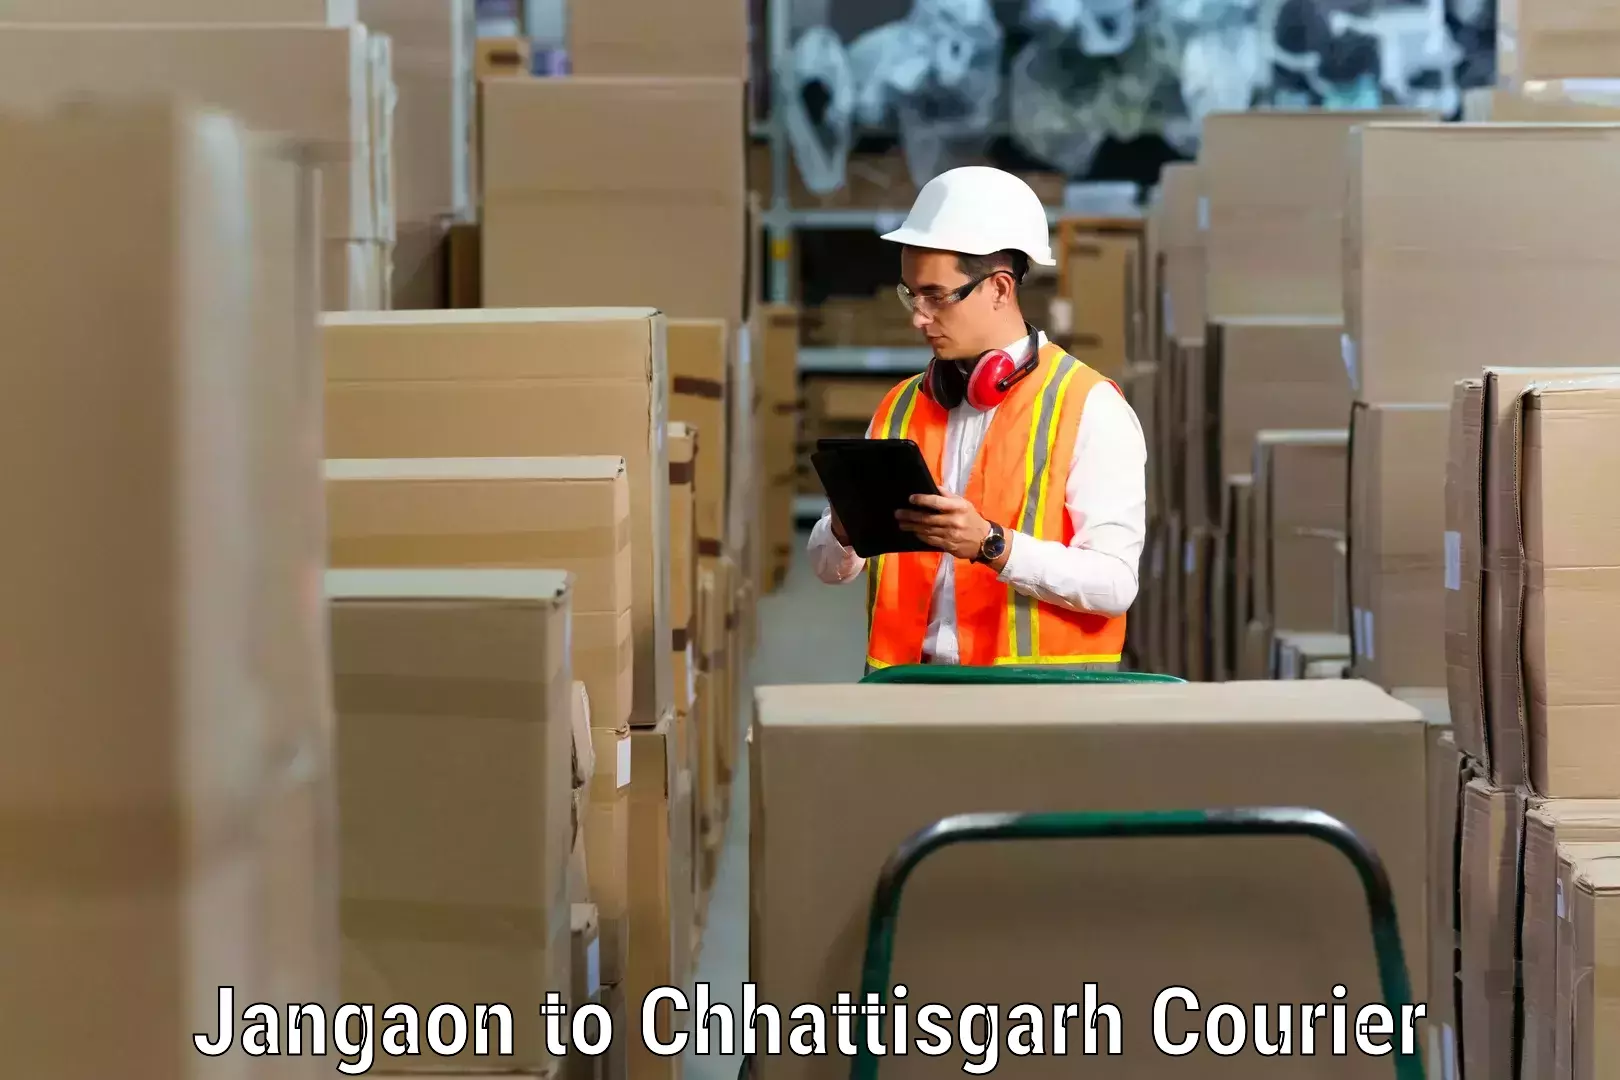 Professional moving company Jangaon to Chhattisgarh